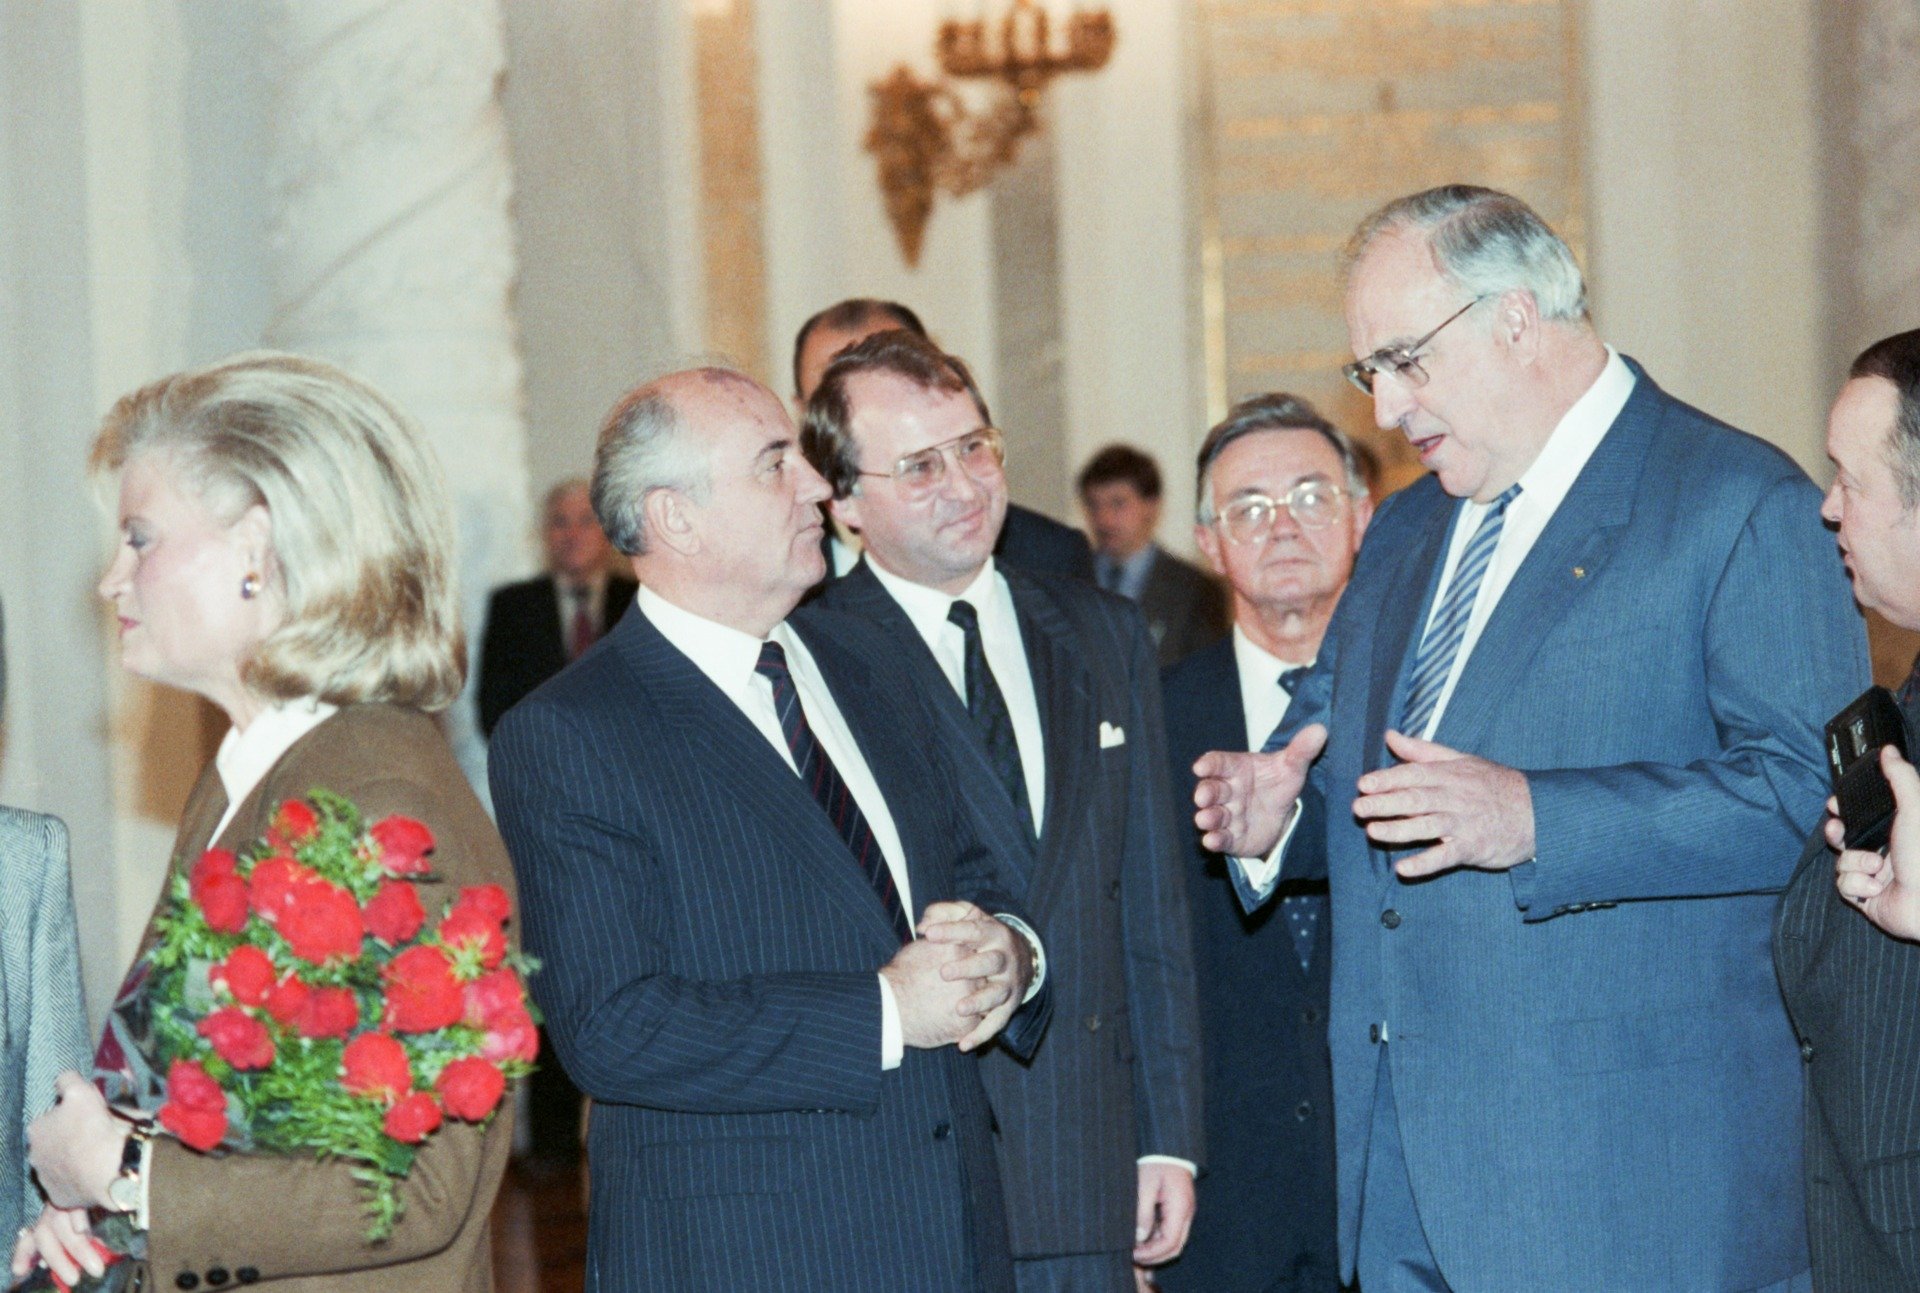 1 ноября 1988 г. Гельмут Коль (справа) и Михаил Горбачев. Фото: Юрий Лизунов, Александр Чумичев / Фотохроника ТАСС